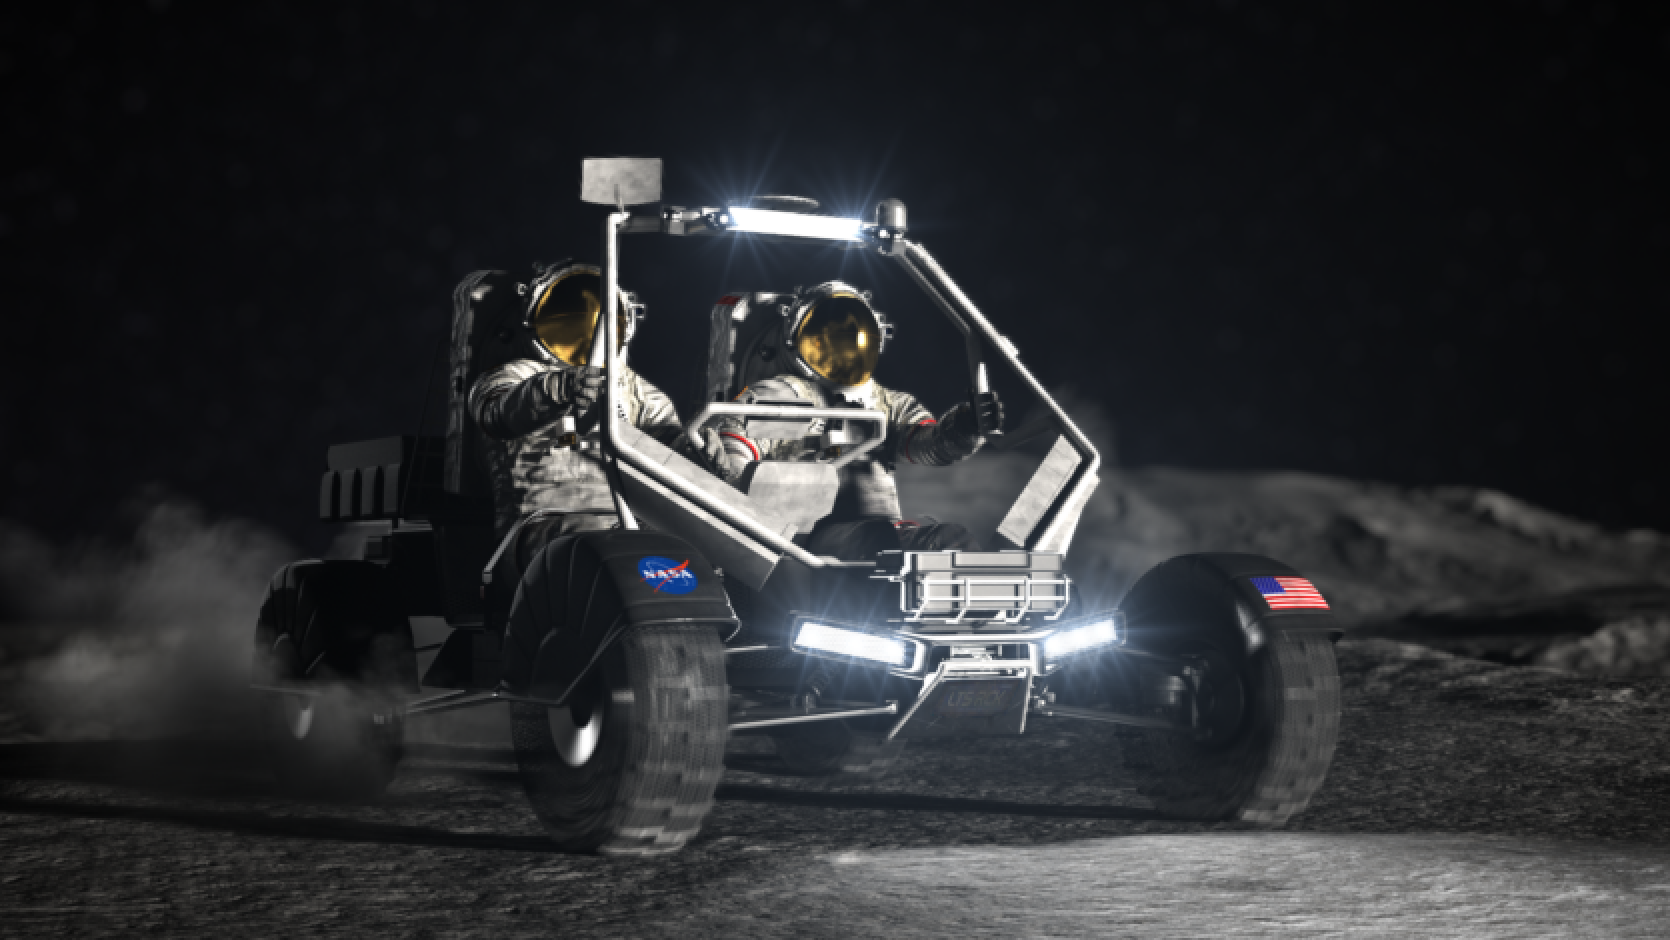 NASA ir izvēlējusies trīs uzņēmumus, kas radīs "mēness automobili" Artemis misiju astronautiem.